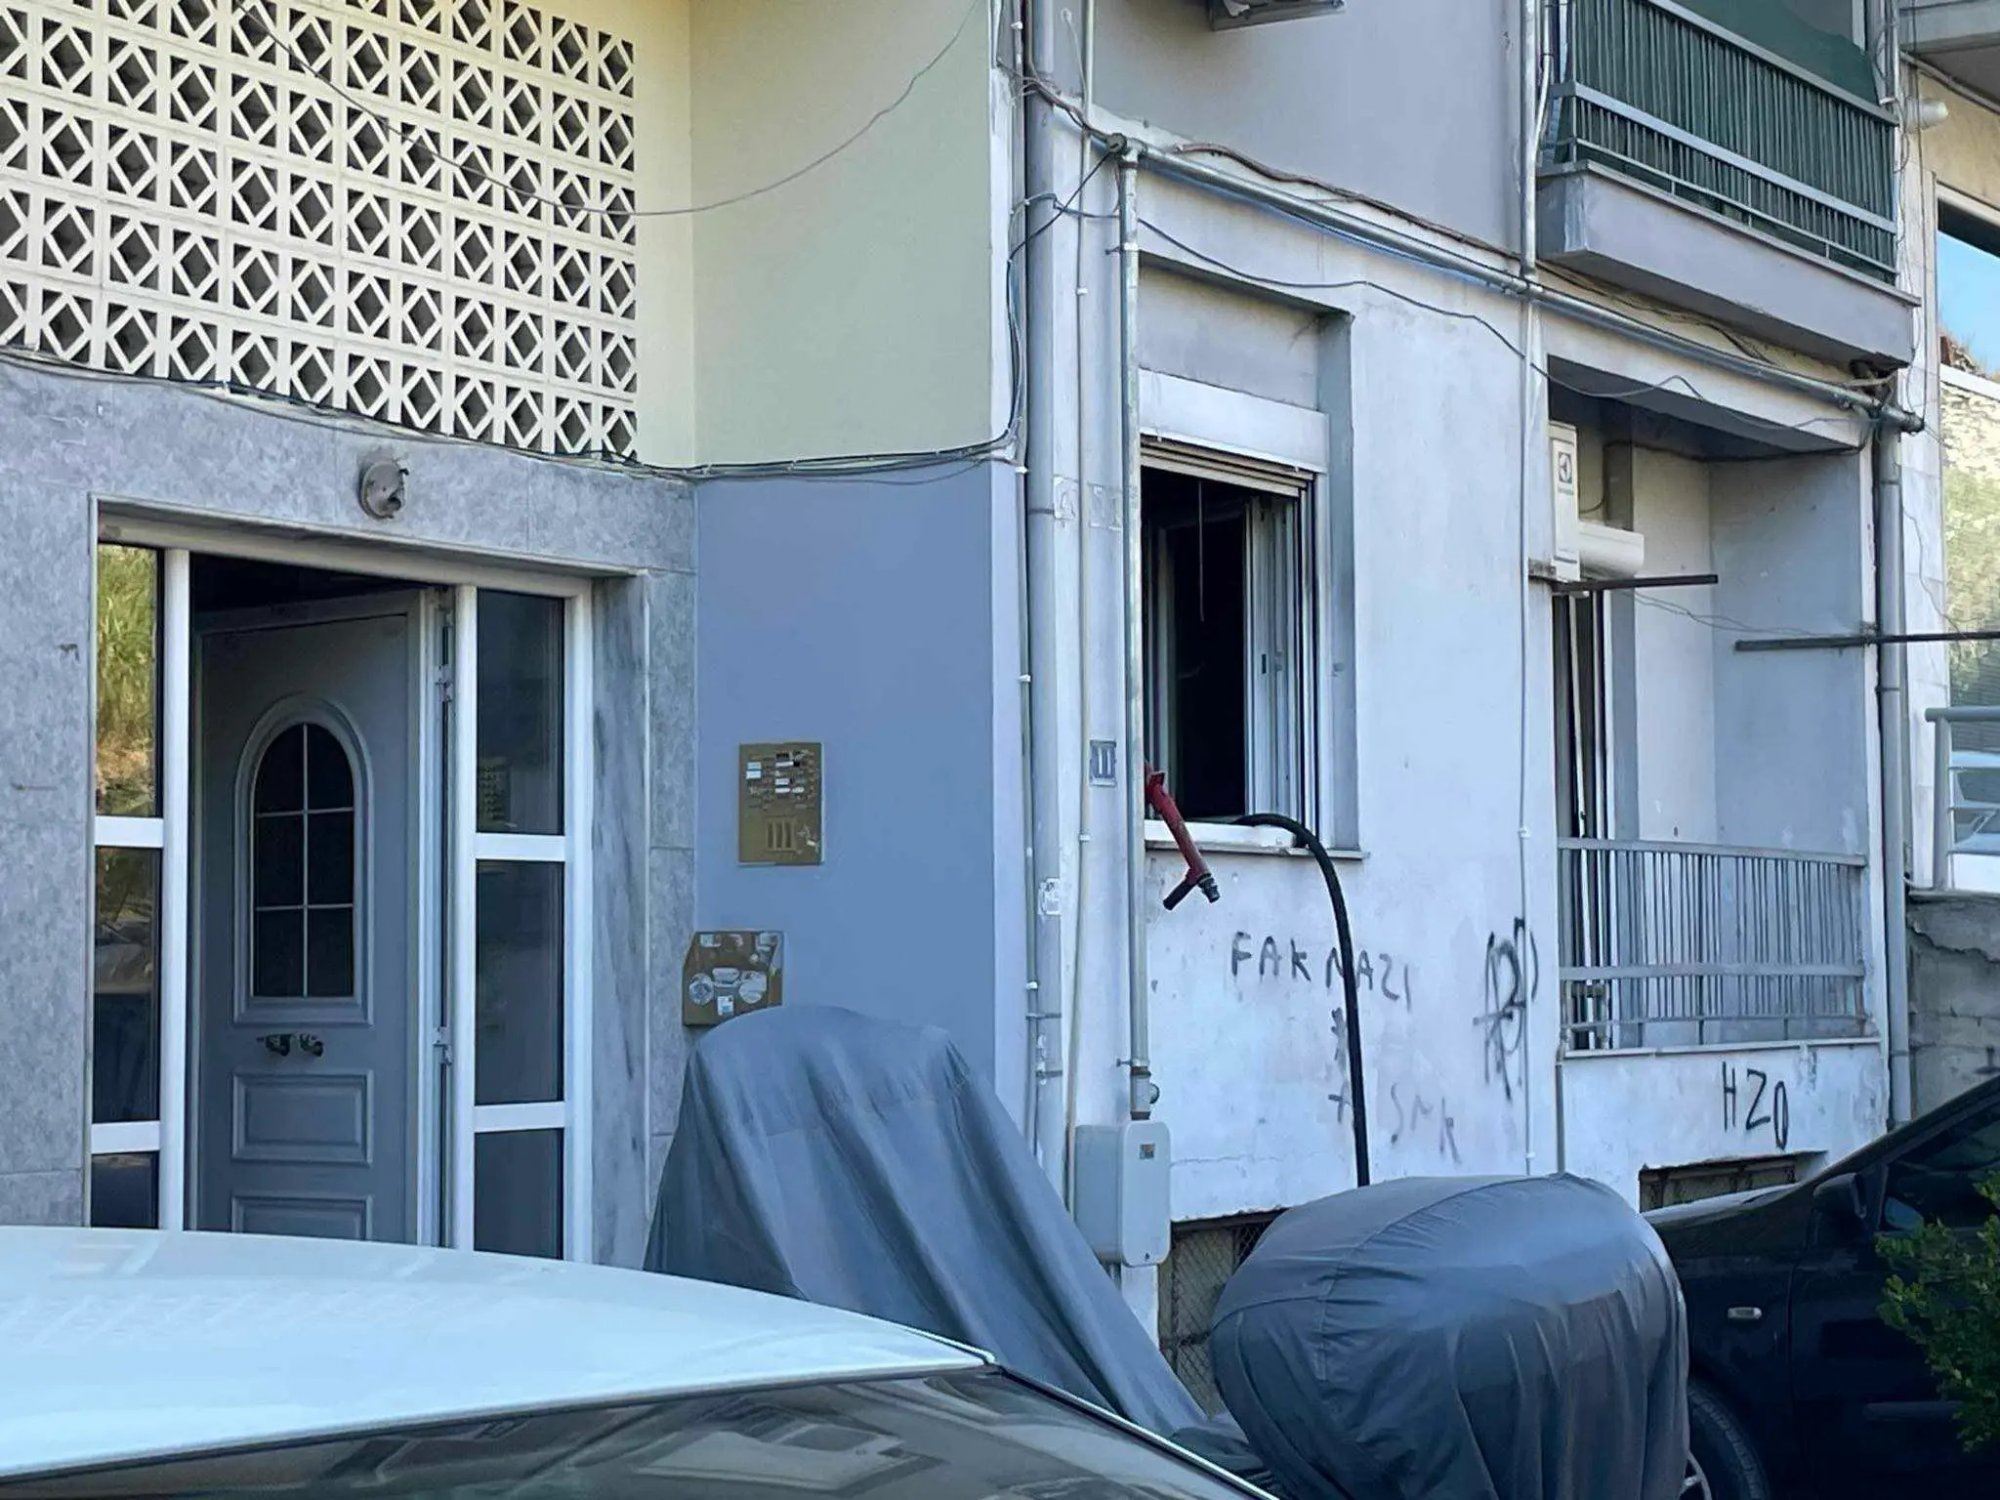 Πυρκαγιά σε διαμέρισμα στη Θεσσαλονίκη - Απεγκλωβίστηκαν πέντε ανήλικα